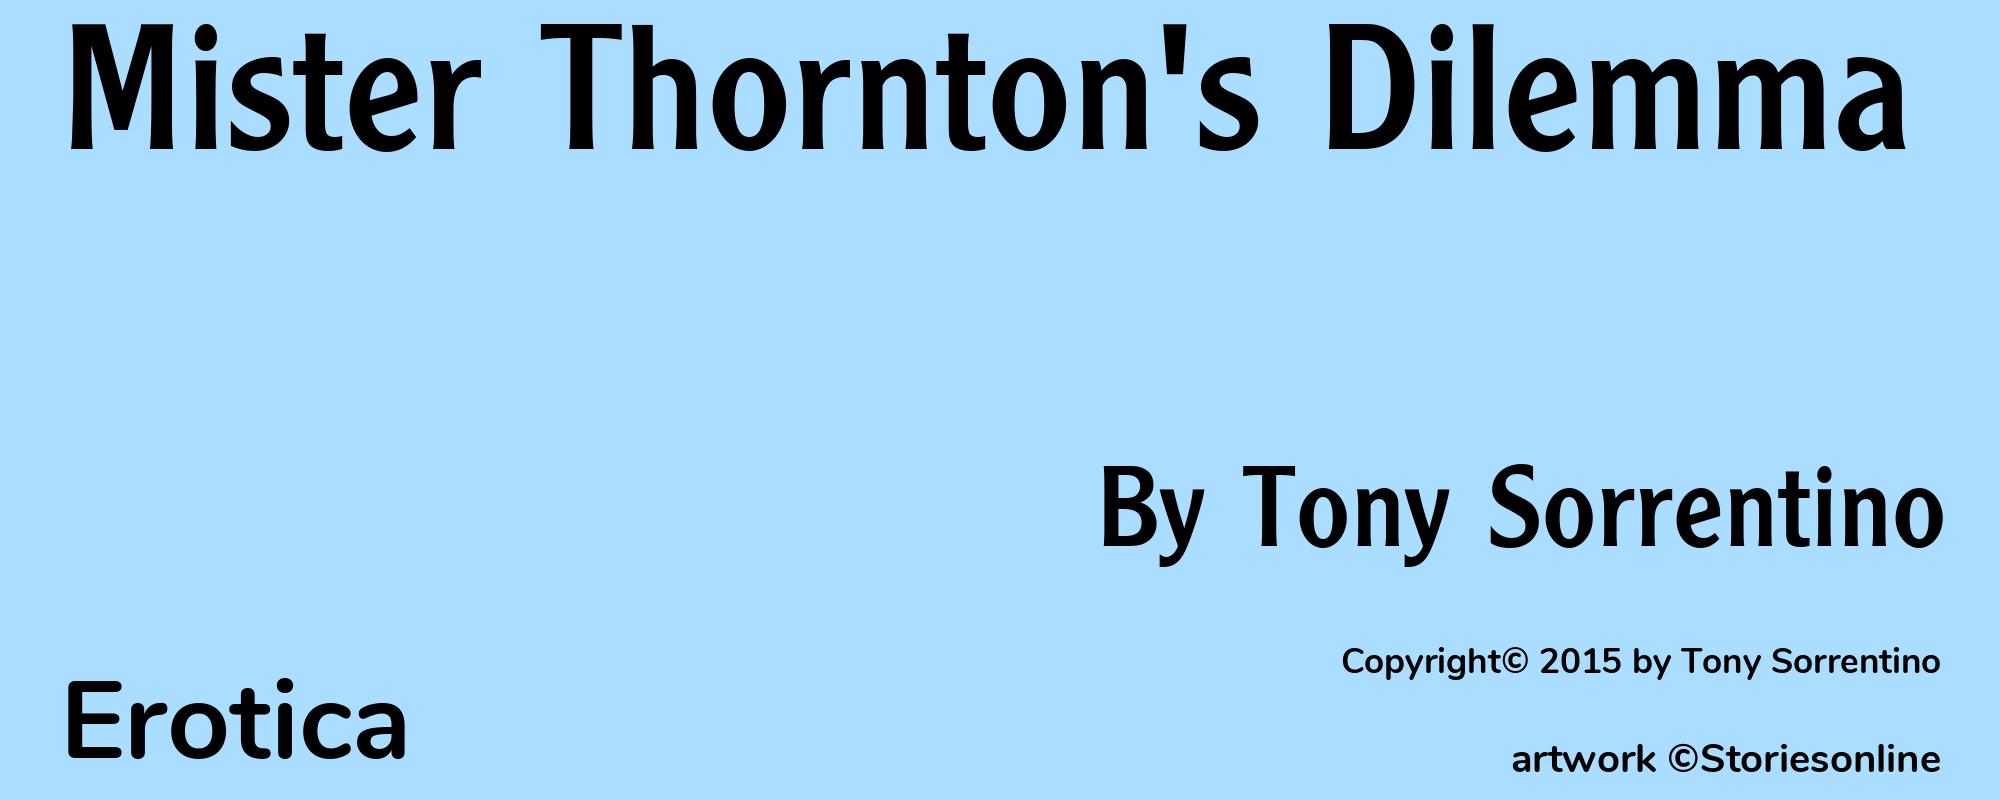 Mister Thornton's Dilemma - Cover